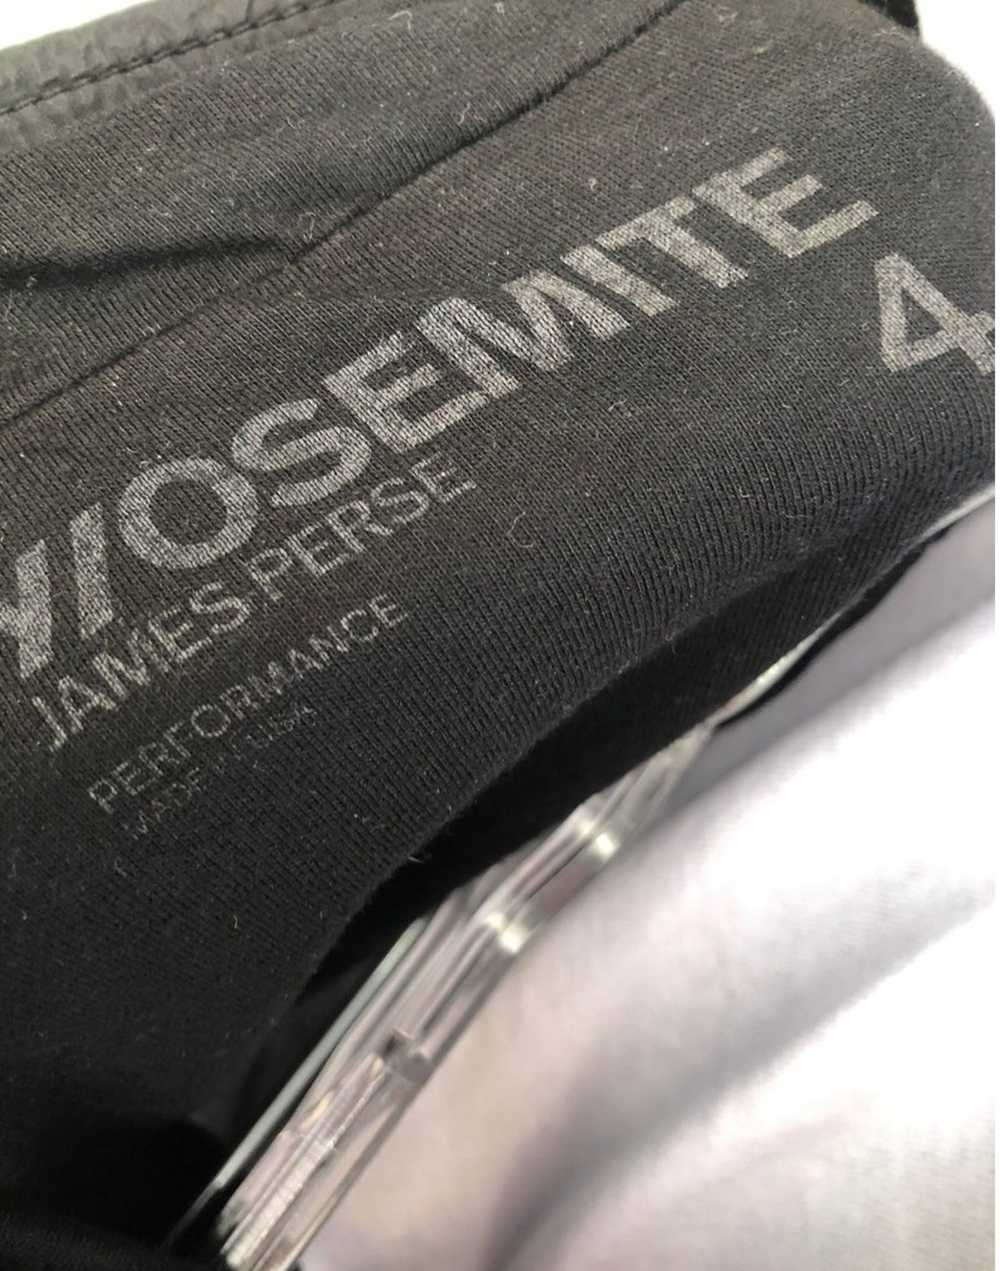 James Perse Yosemite zip up jacket - image 6